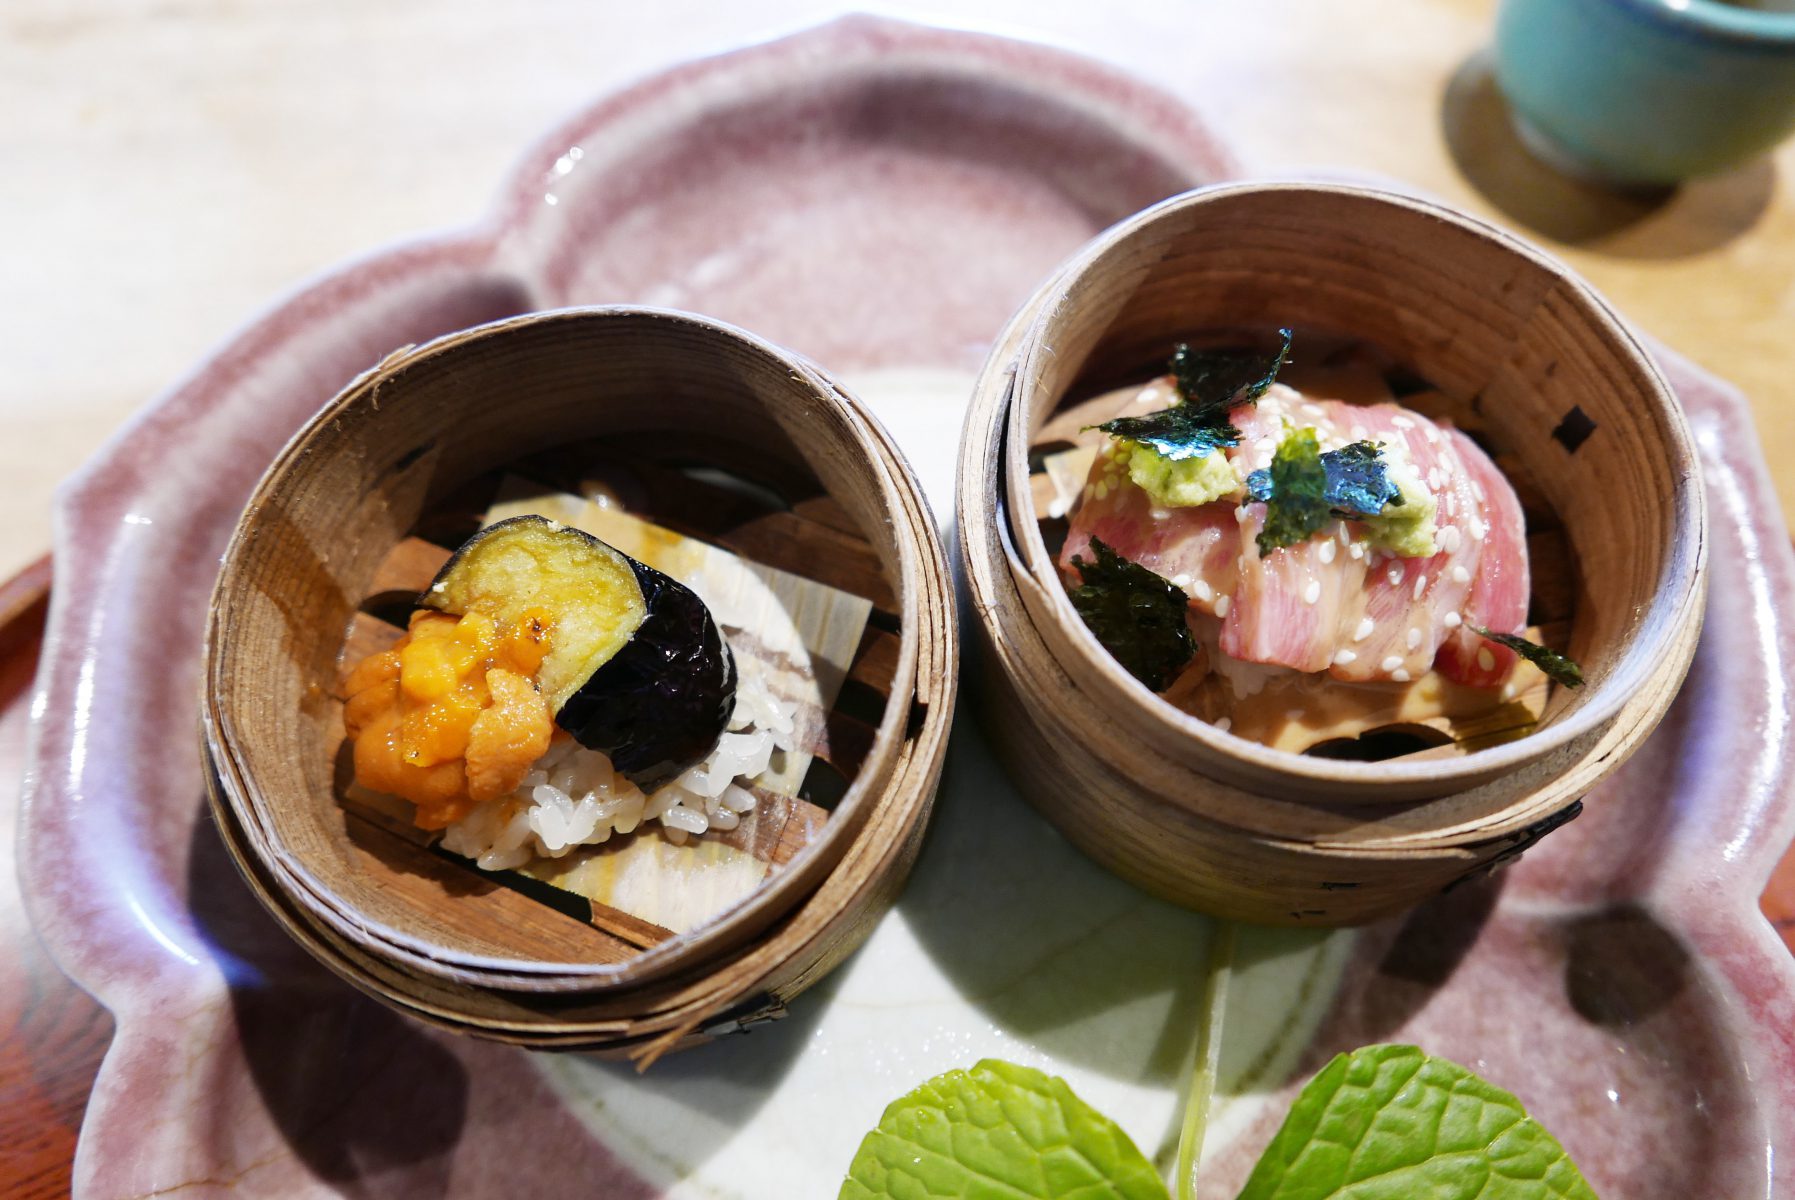 Eggplant tempura with sea urchin and otoro sashimi with sesame